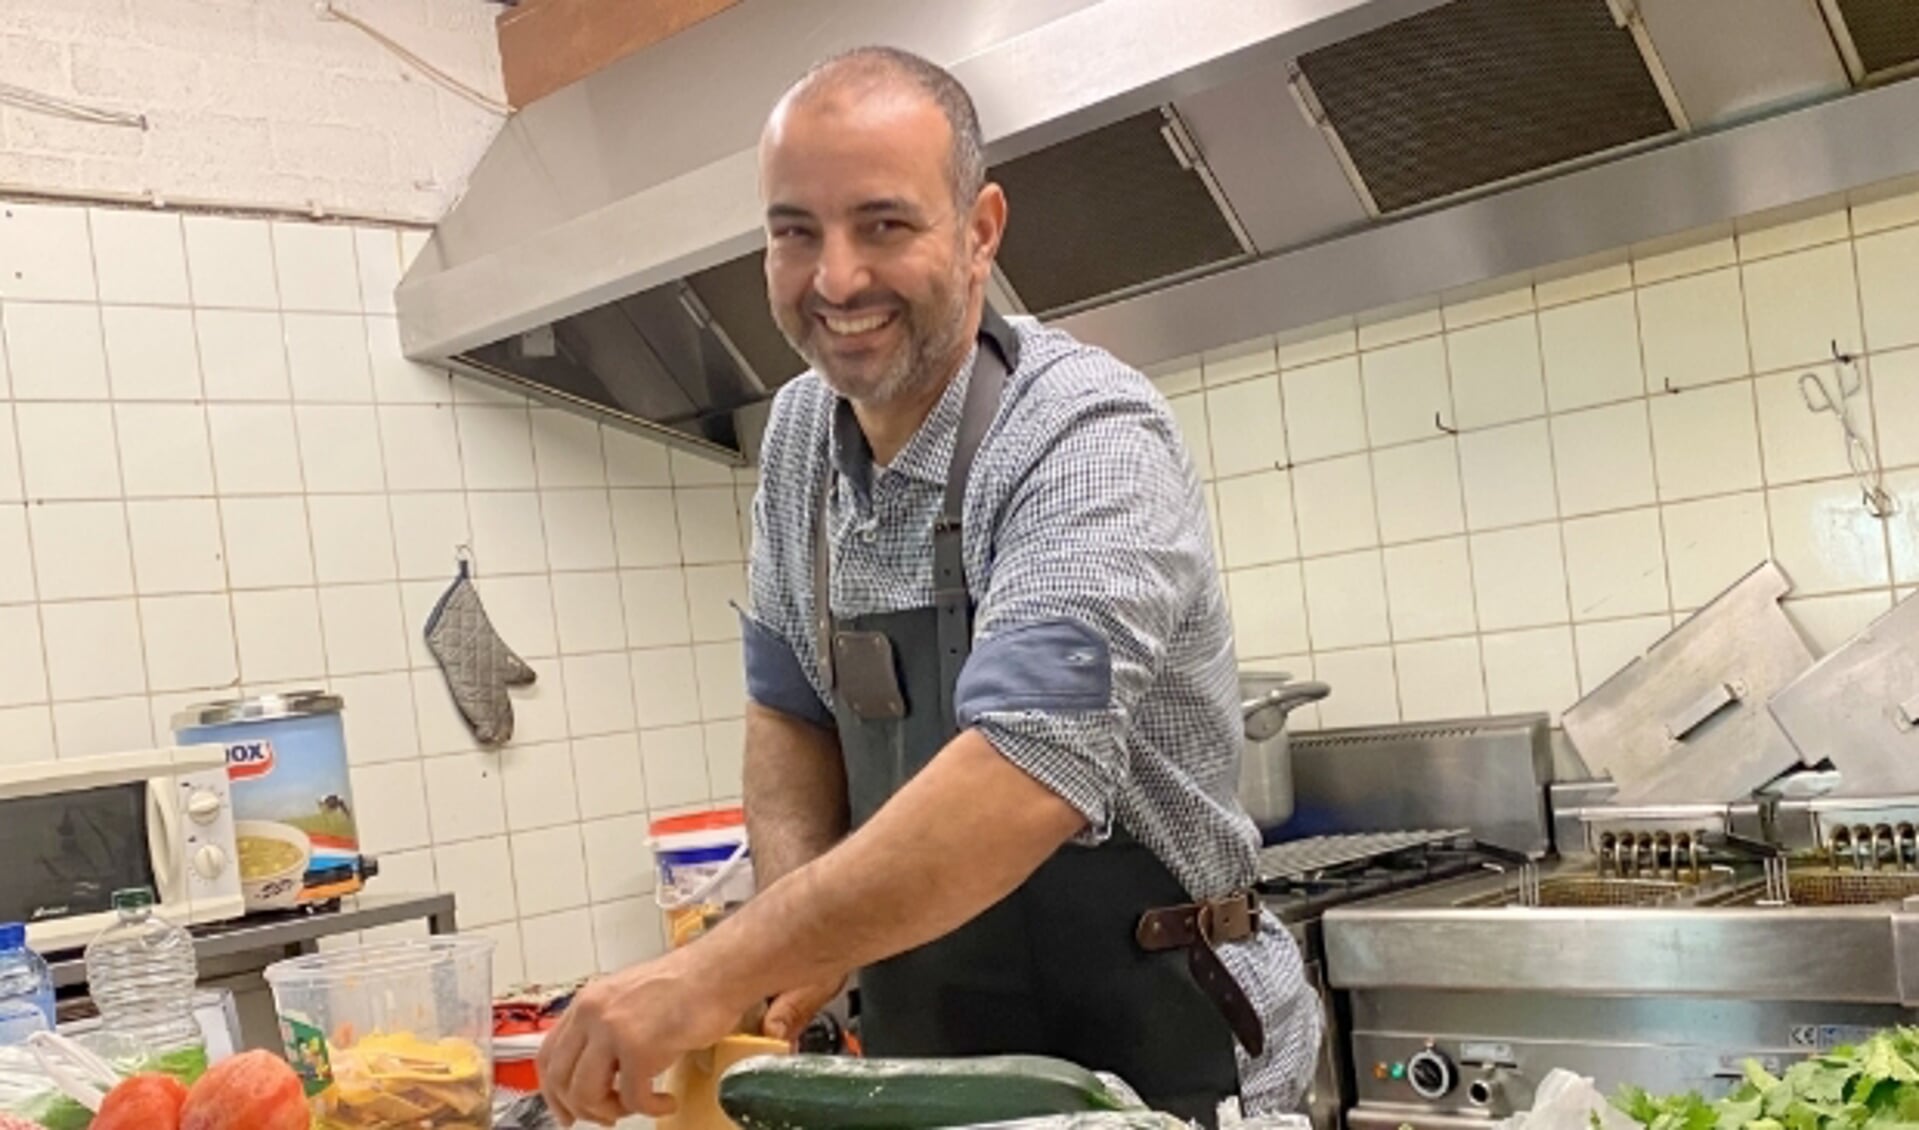 Koken doet Driess Harmachi wel vaker, maar nooit eerder een Marokkaanse maaltijd voor zijn dorpsgenoten. (Foto: Janneke Severs-Hilgeman)